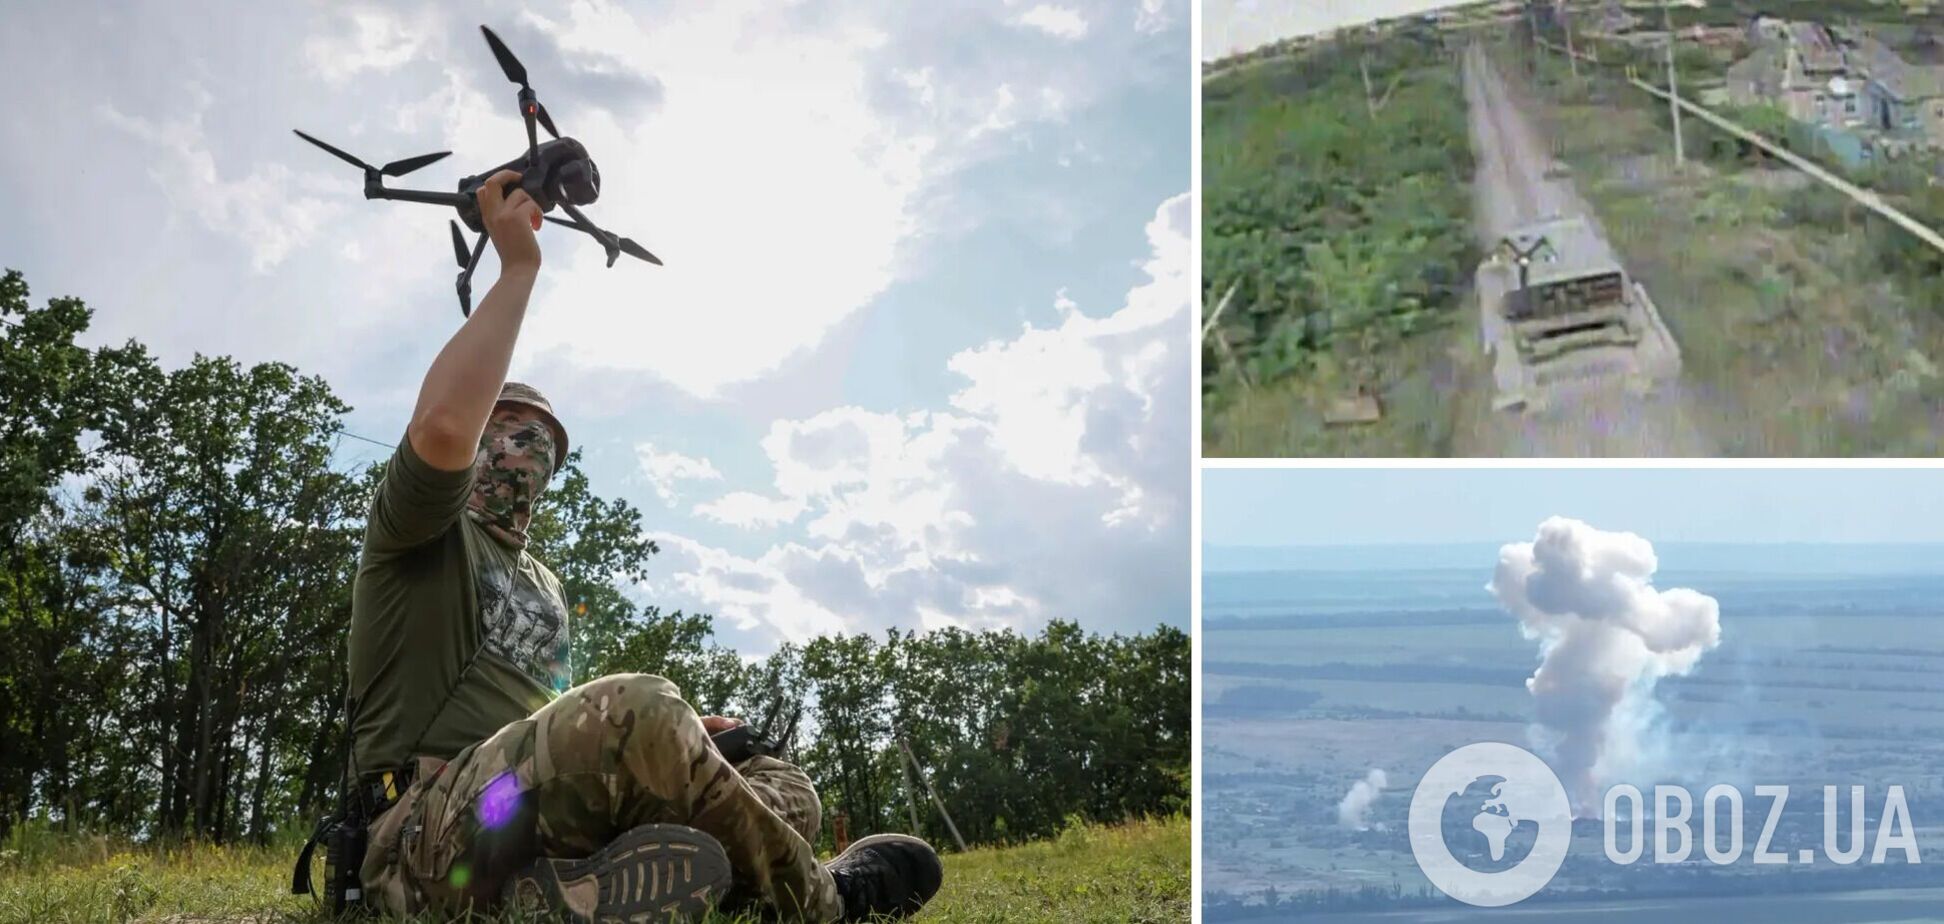 Український FPV-дрон перетворив російський 'Сонцепьок' на купу брухту. Відео